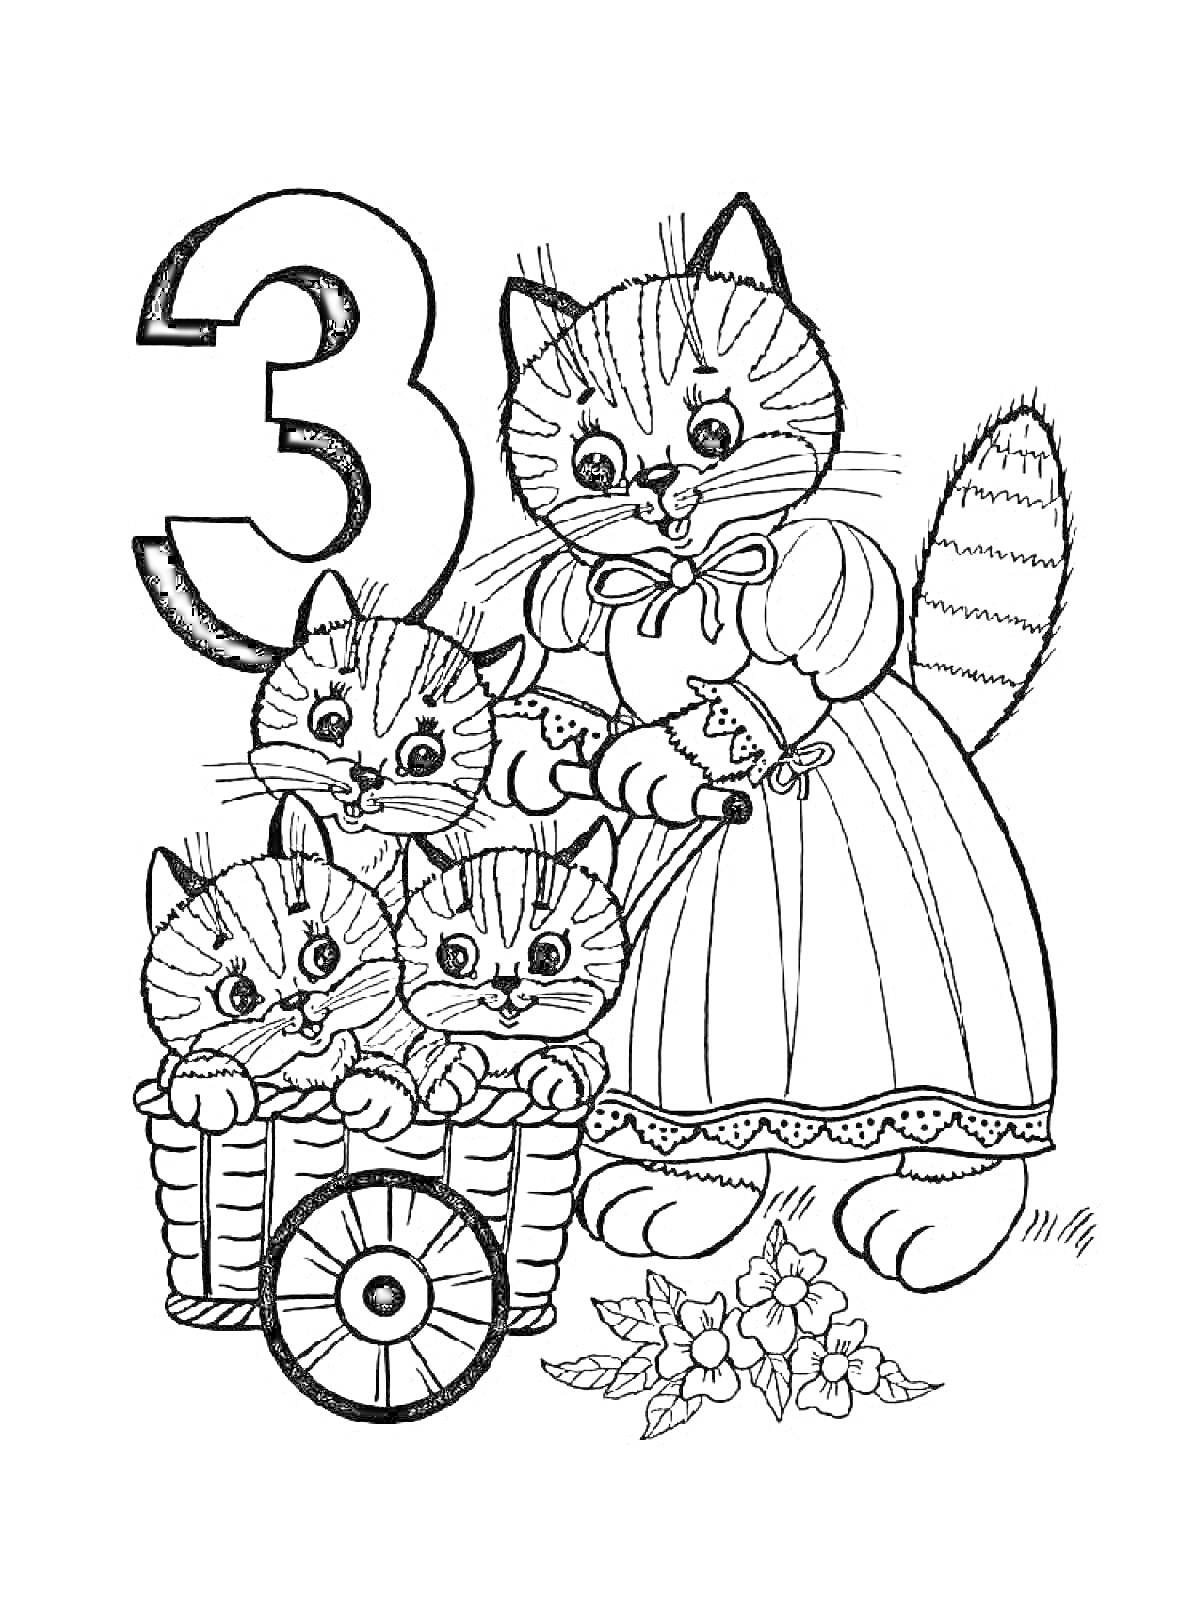 Раскраска Кошка в платье с бантом и три котенка в корзине на колесах, рядом цифра 3 и цветочные узоры